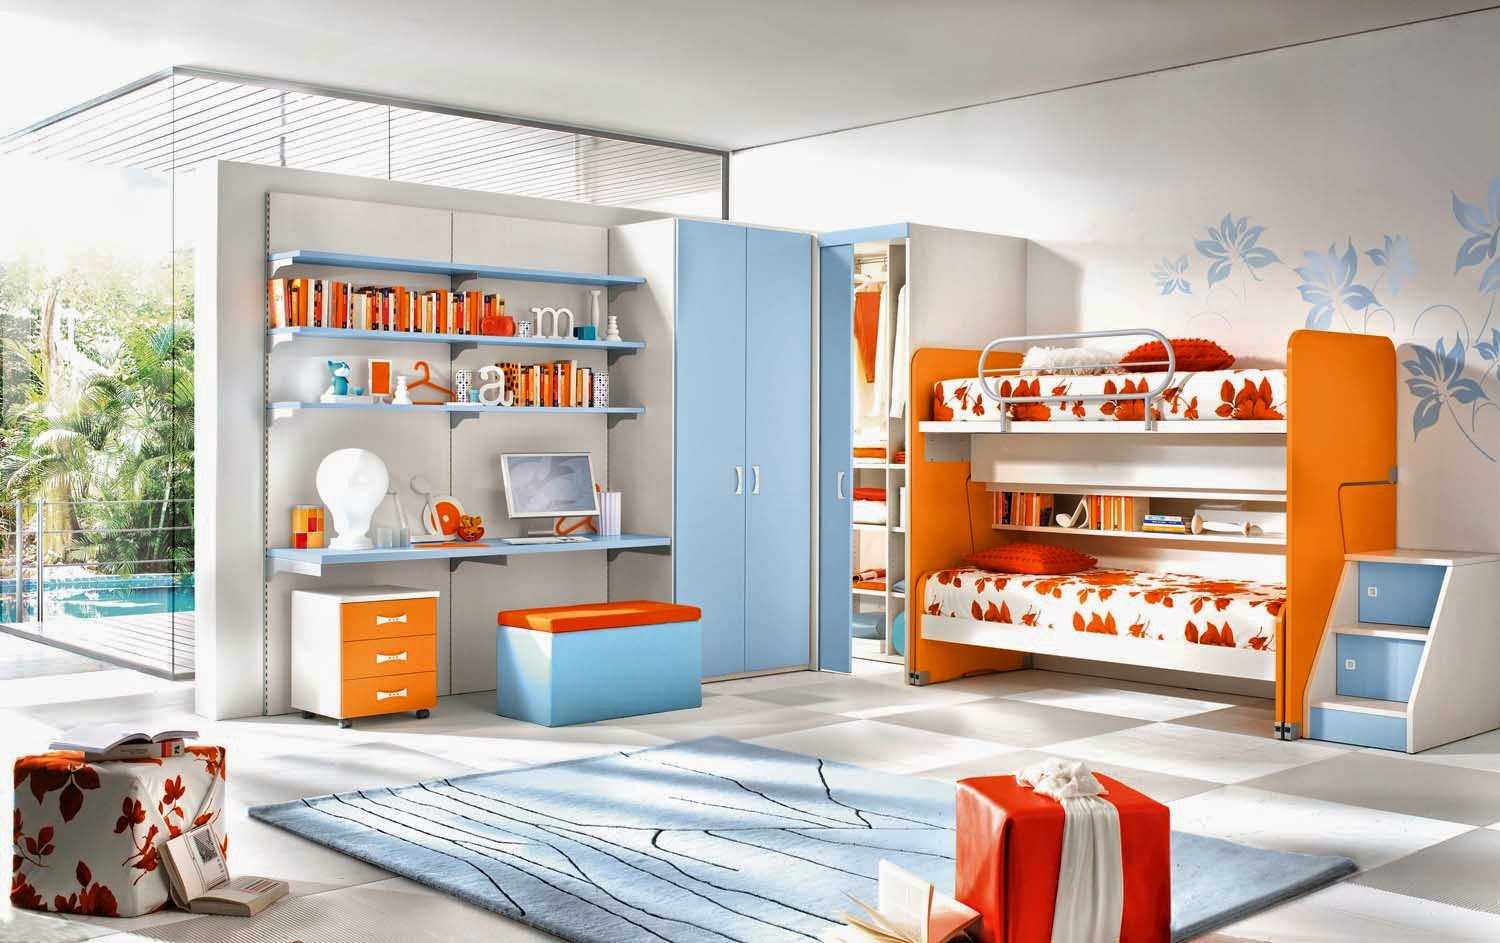 kombinace tmavě oranžové ve stylu místnosti s jinými barvami